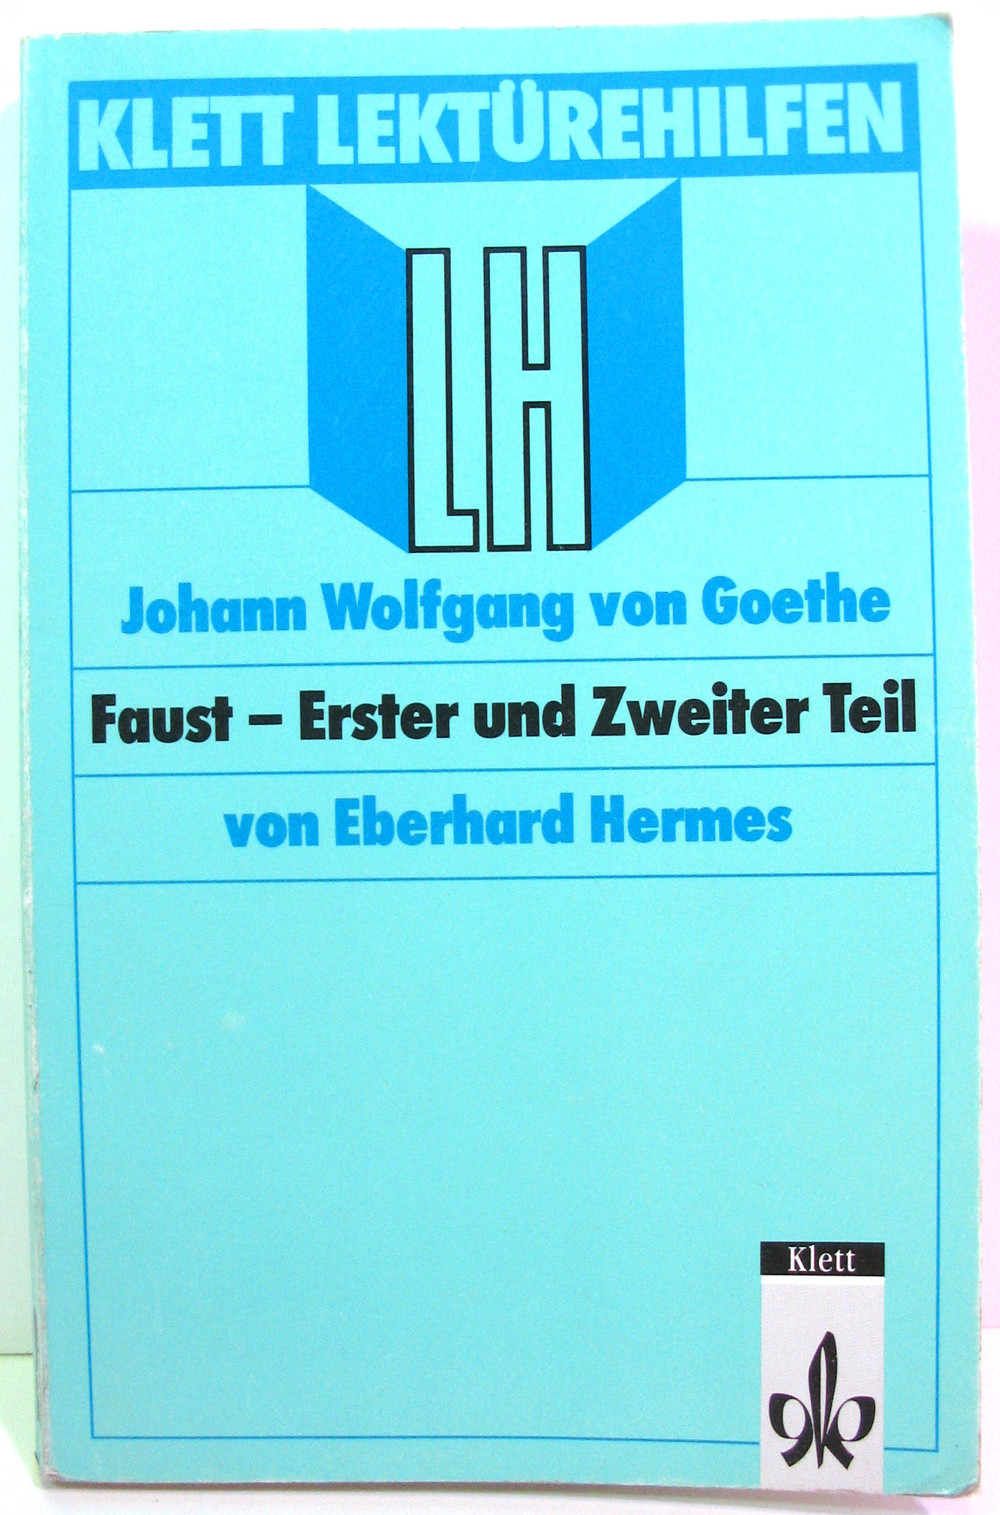 Klett Lektürenhilfen - Faust - Erster und Zweiter Teil - J. W. von Goethe - Eberhard Hermes